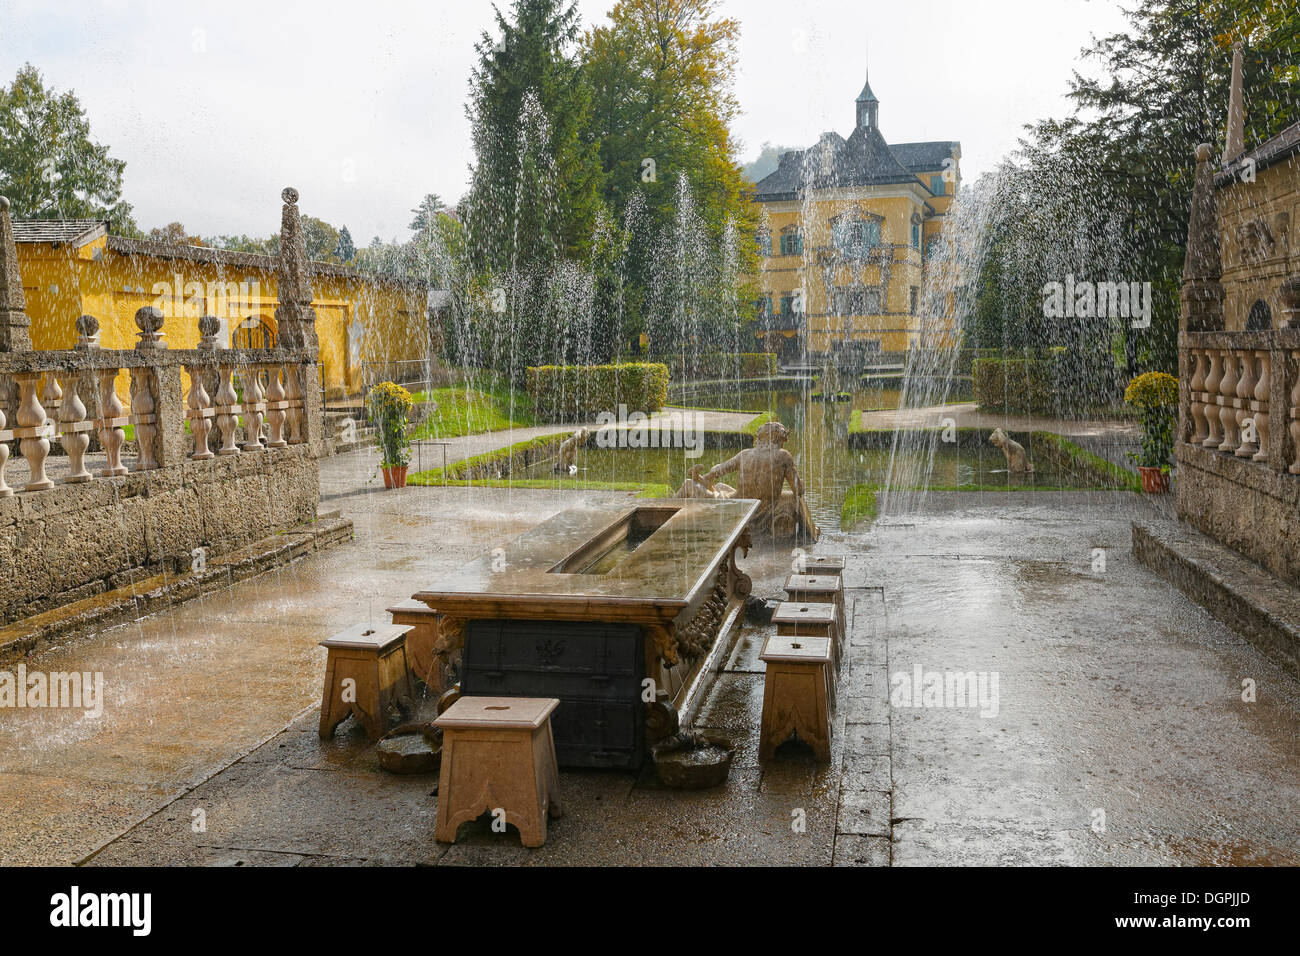 Prince's Table, théâtre Romain, de l'eau dans le parc, château, Hellbrunn Palais Hellbrunn, Salzbourg, Hellbrunn Banque D'Images